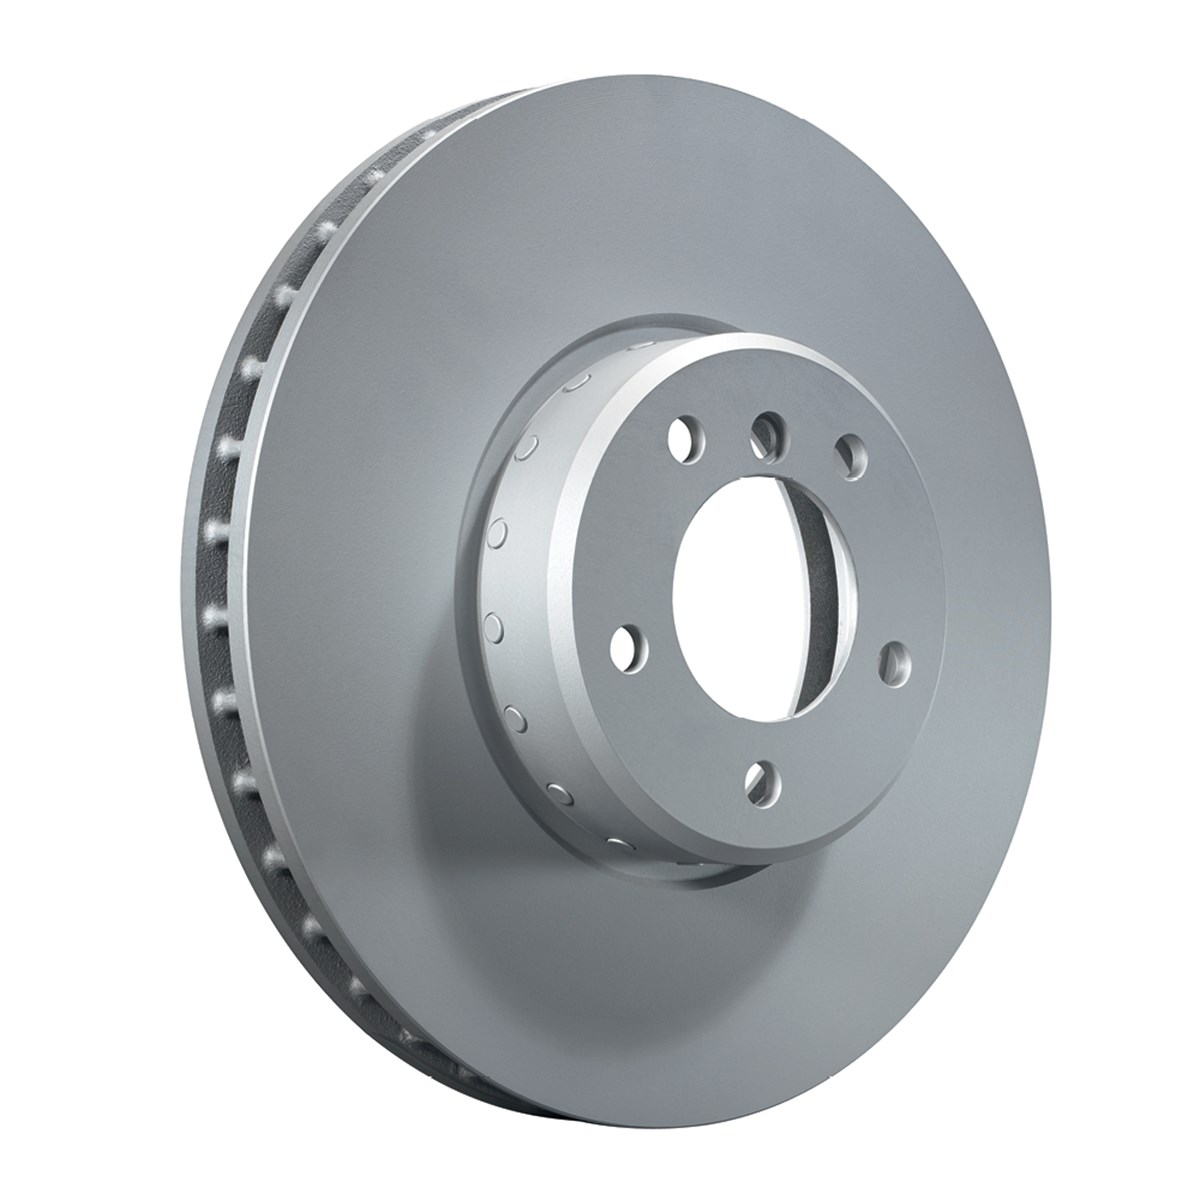 Two-piece brake disc